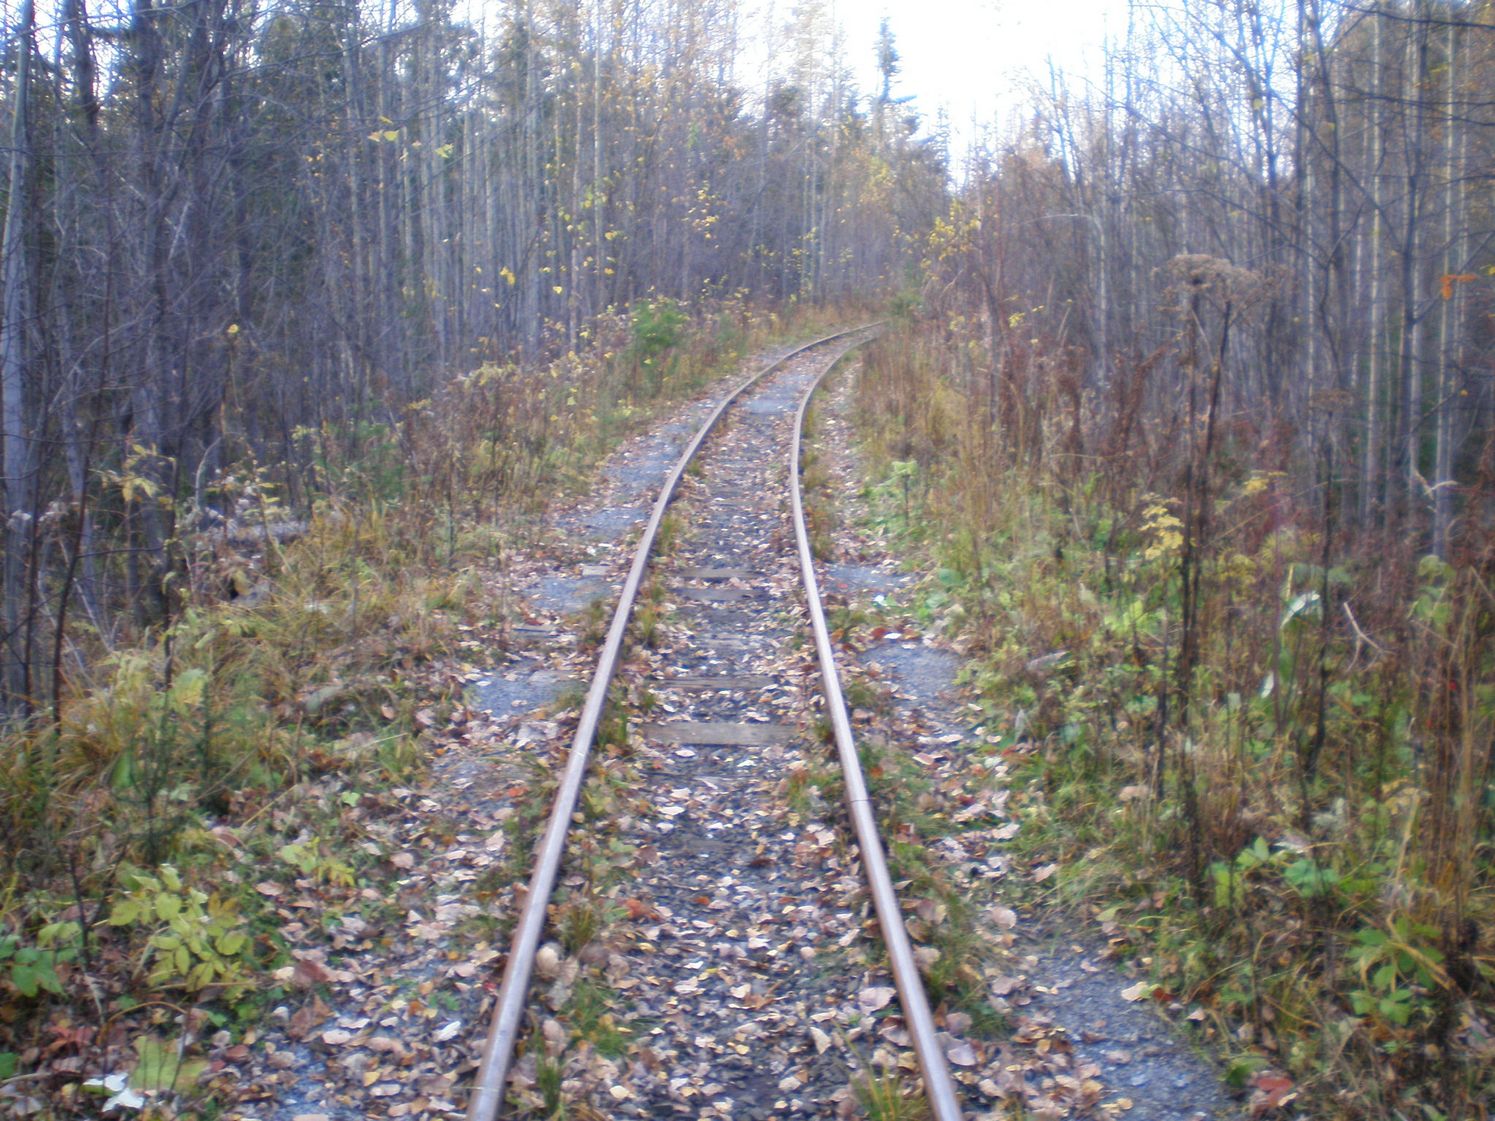 Висимо-Уткинская узкоколейная железная дорога  — фотографии, сделанные в 2007 году (часть 10)